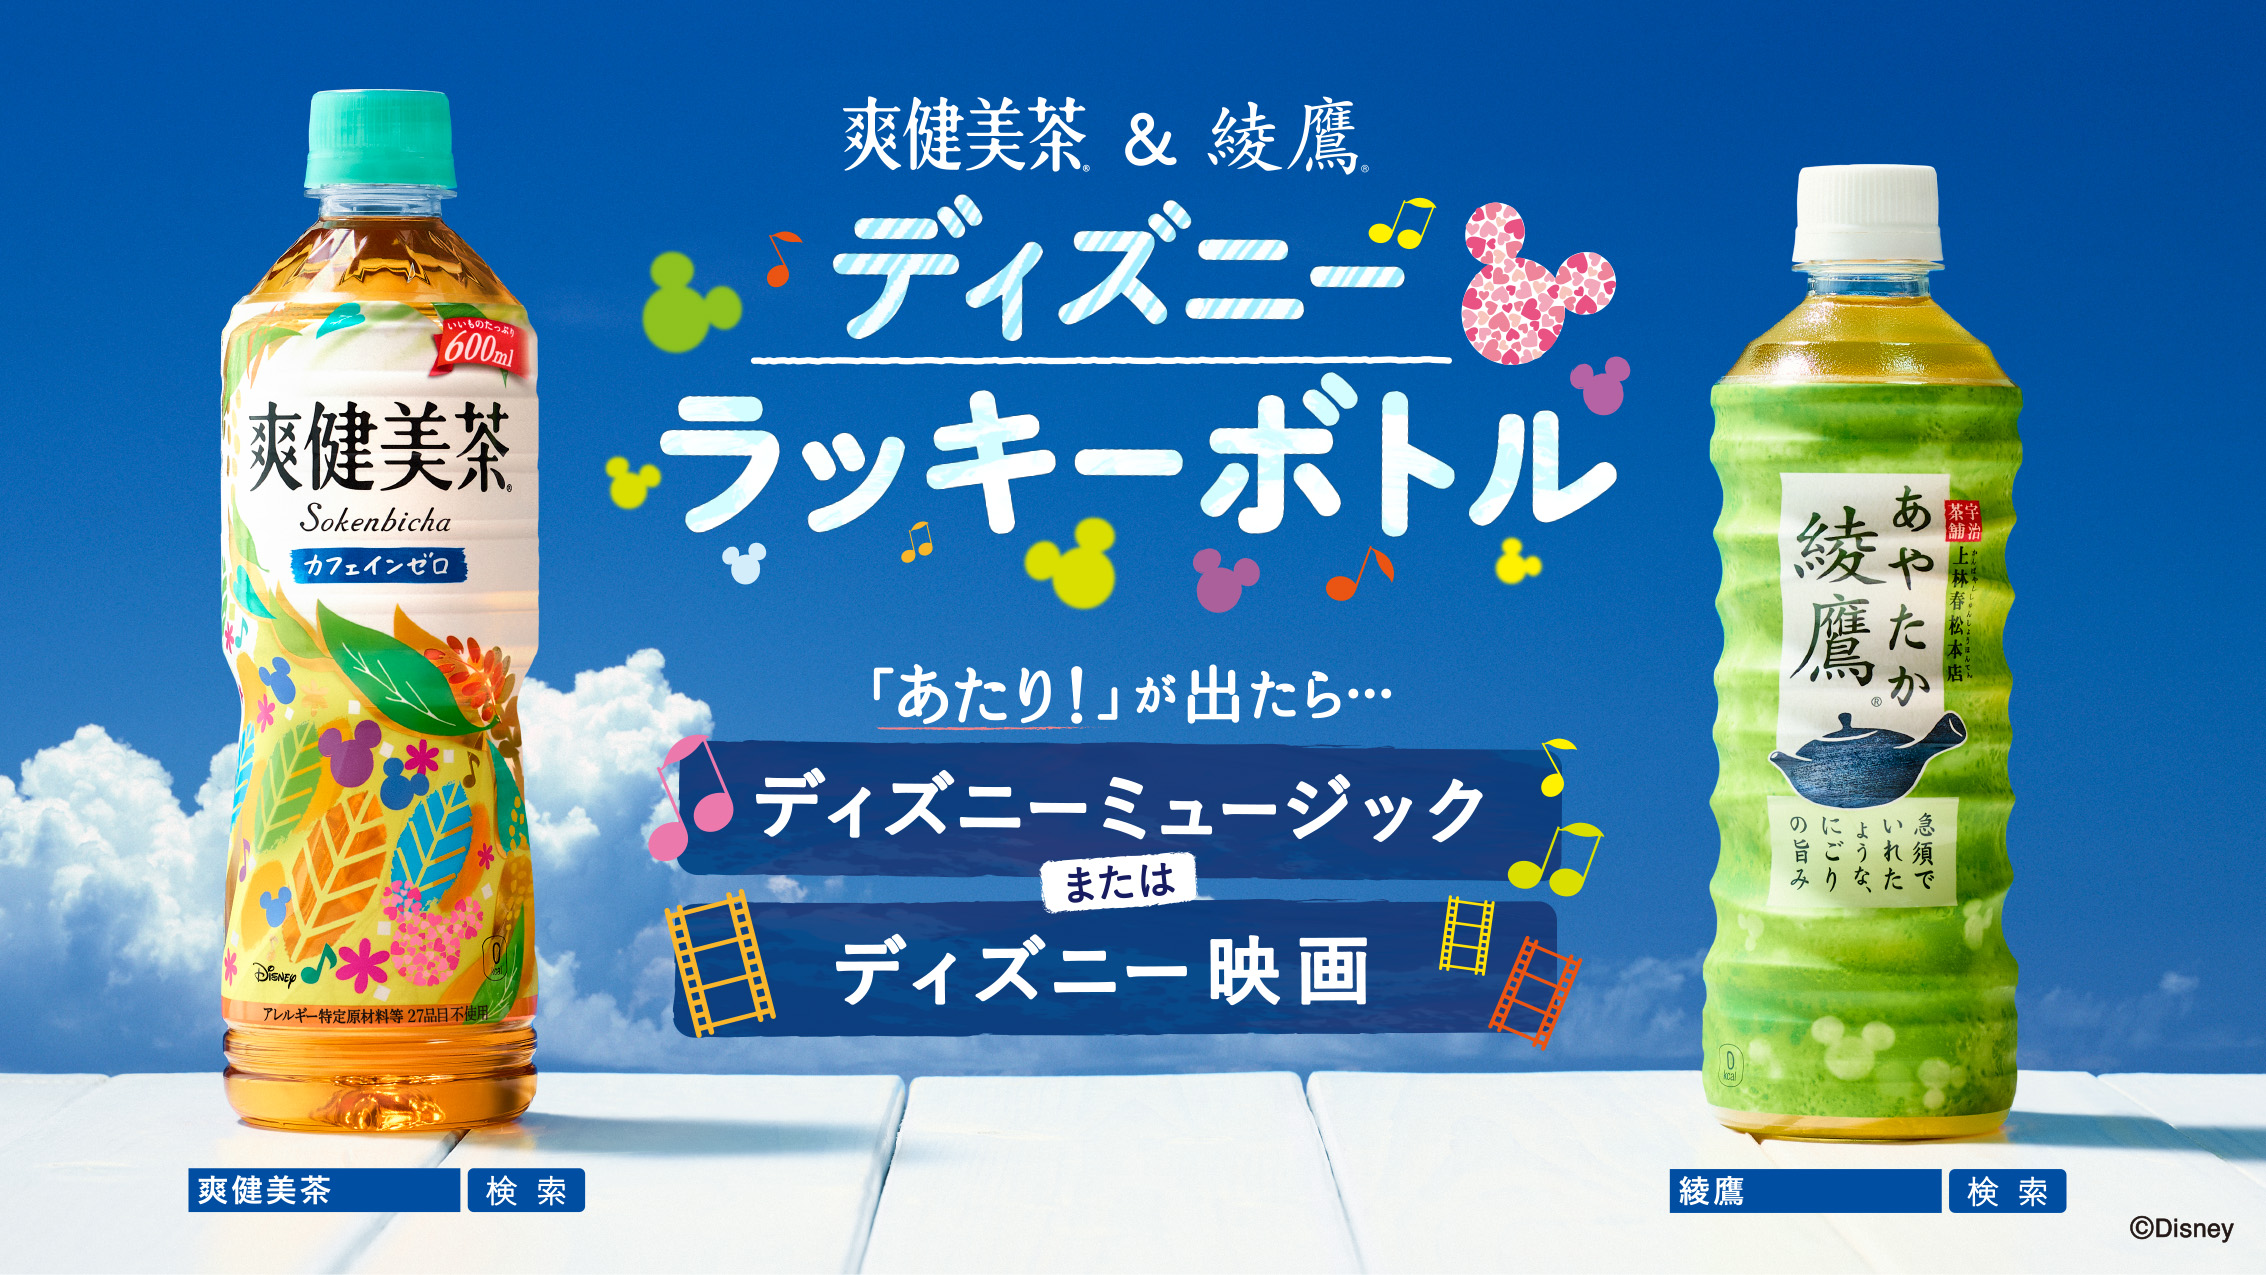 爽健美茶 綾鷹 ディズニー ラッキーボトル 18年6月18日 月 より発売 日本コカ コーラ株式会社のプレスリリース